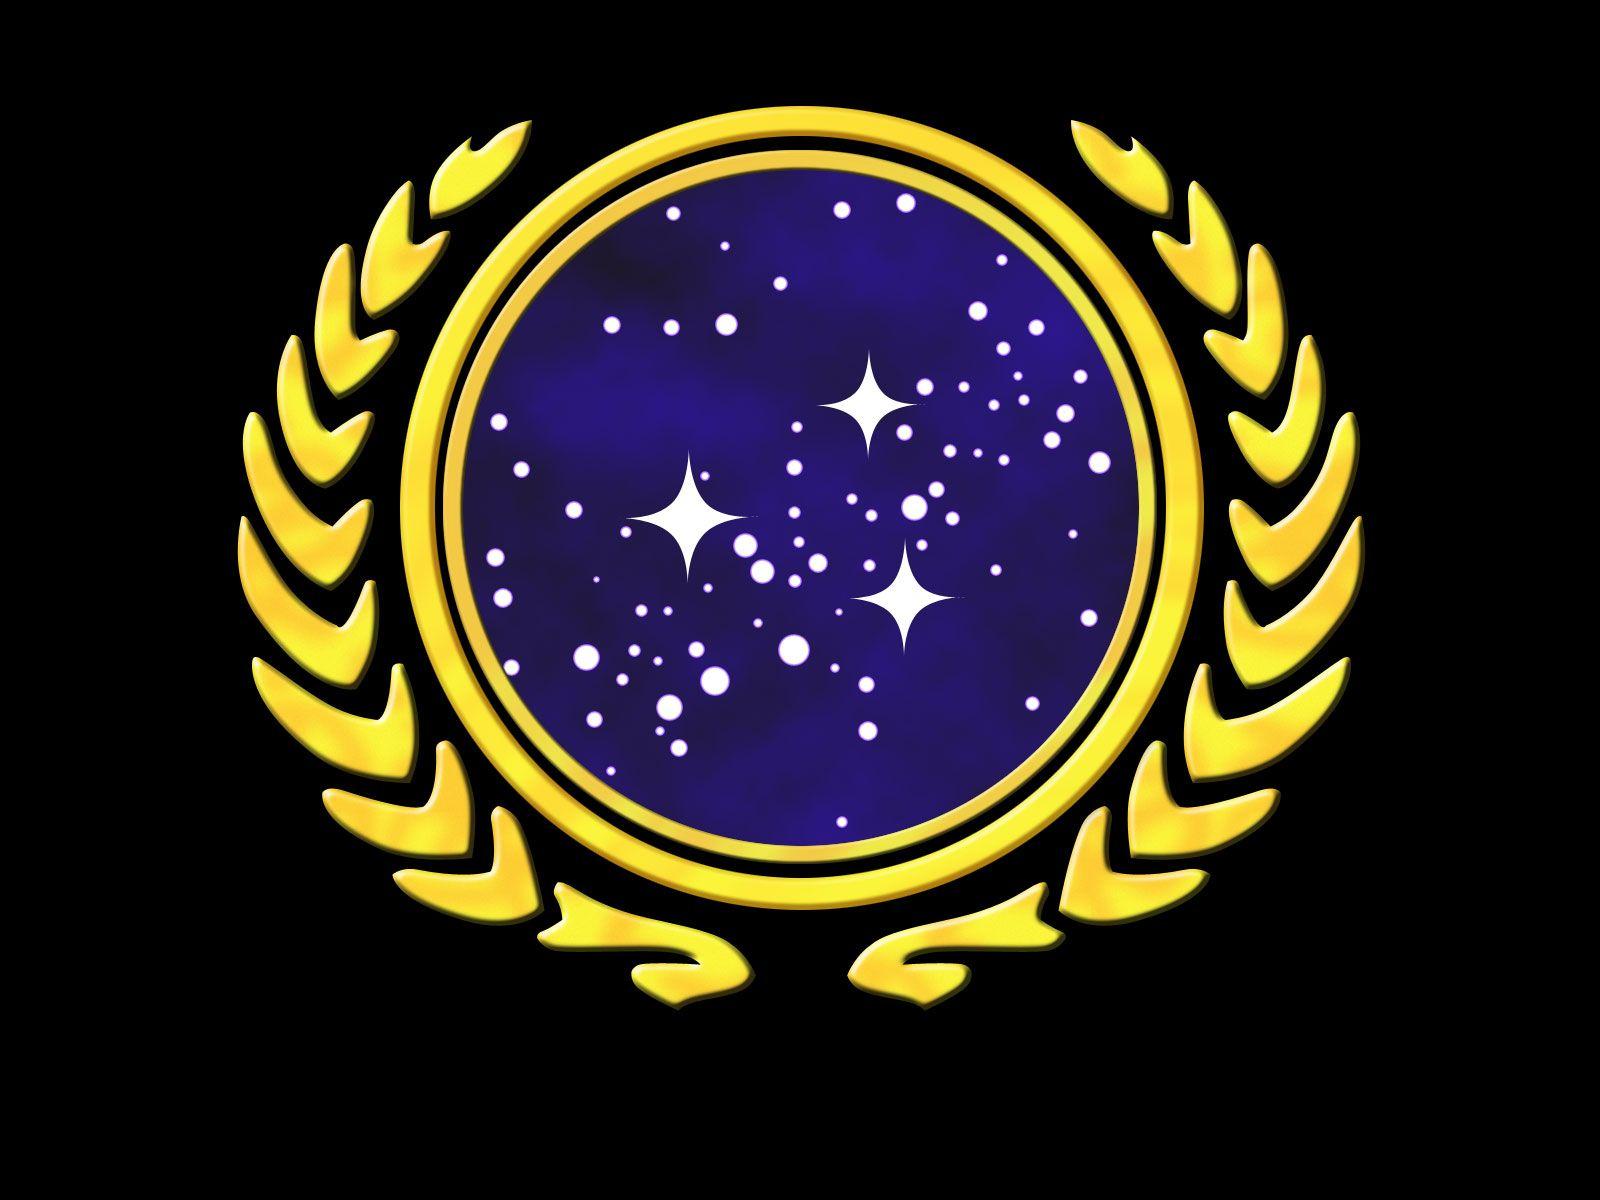 Starfleet Logo Wallpaper